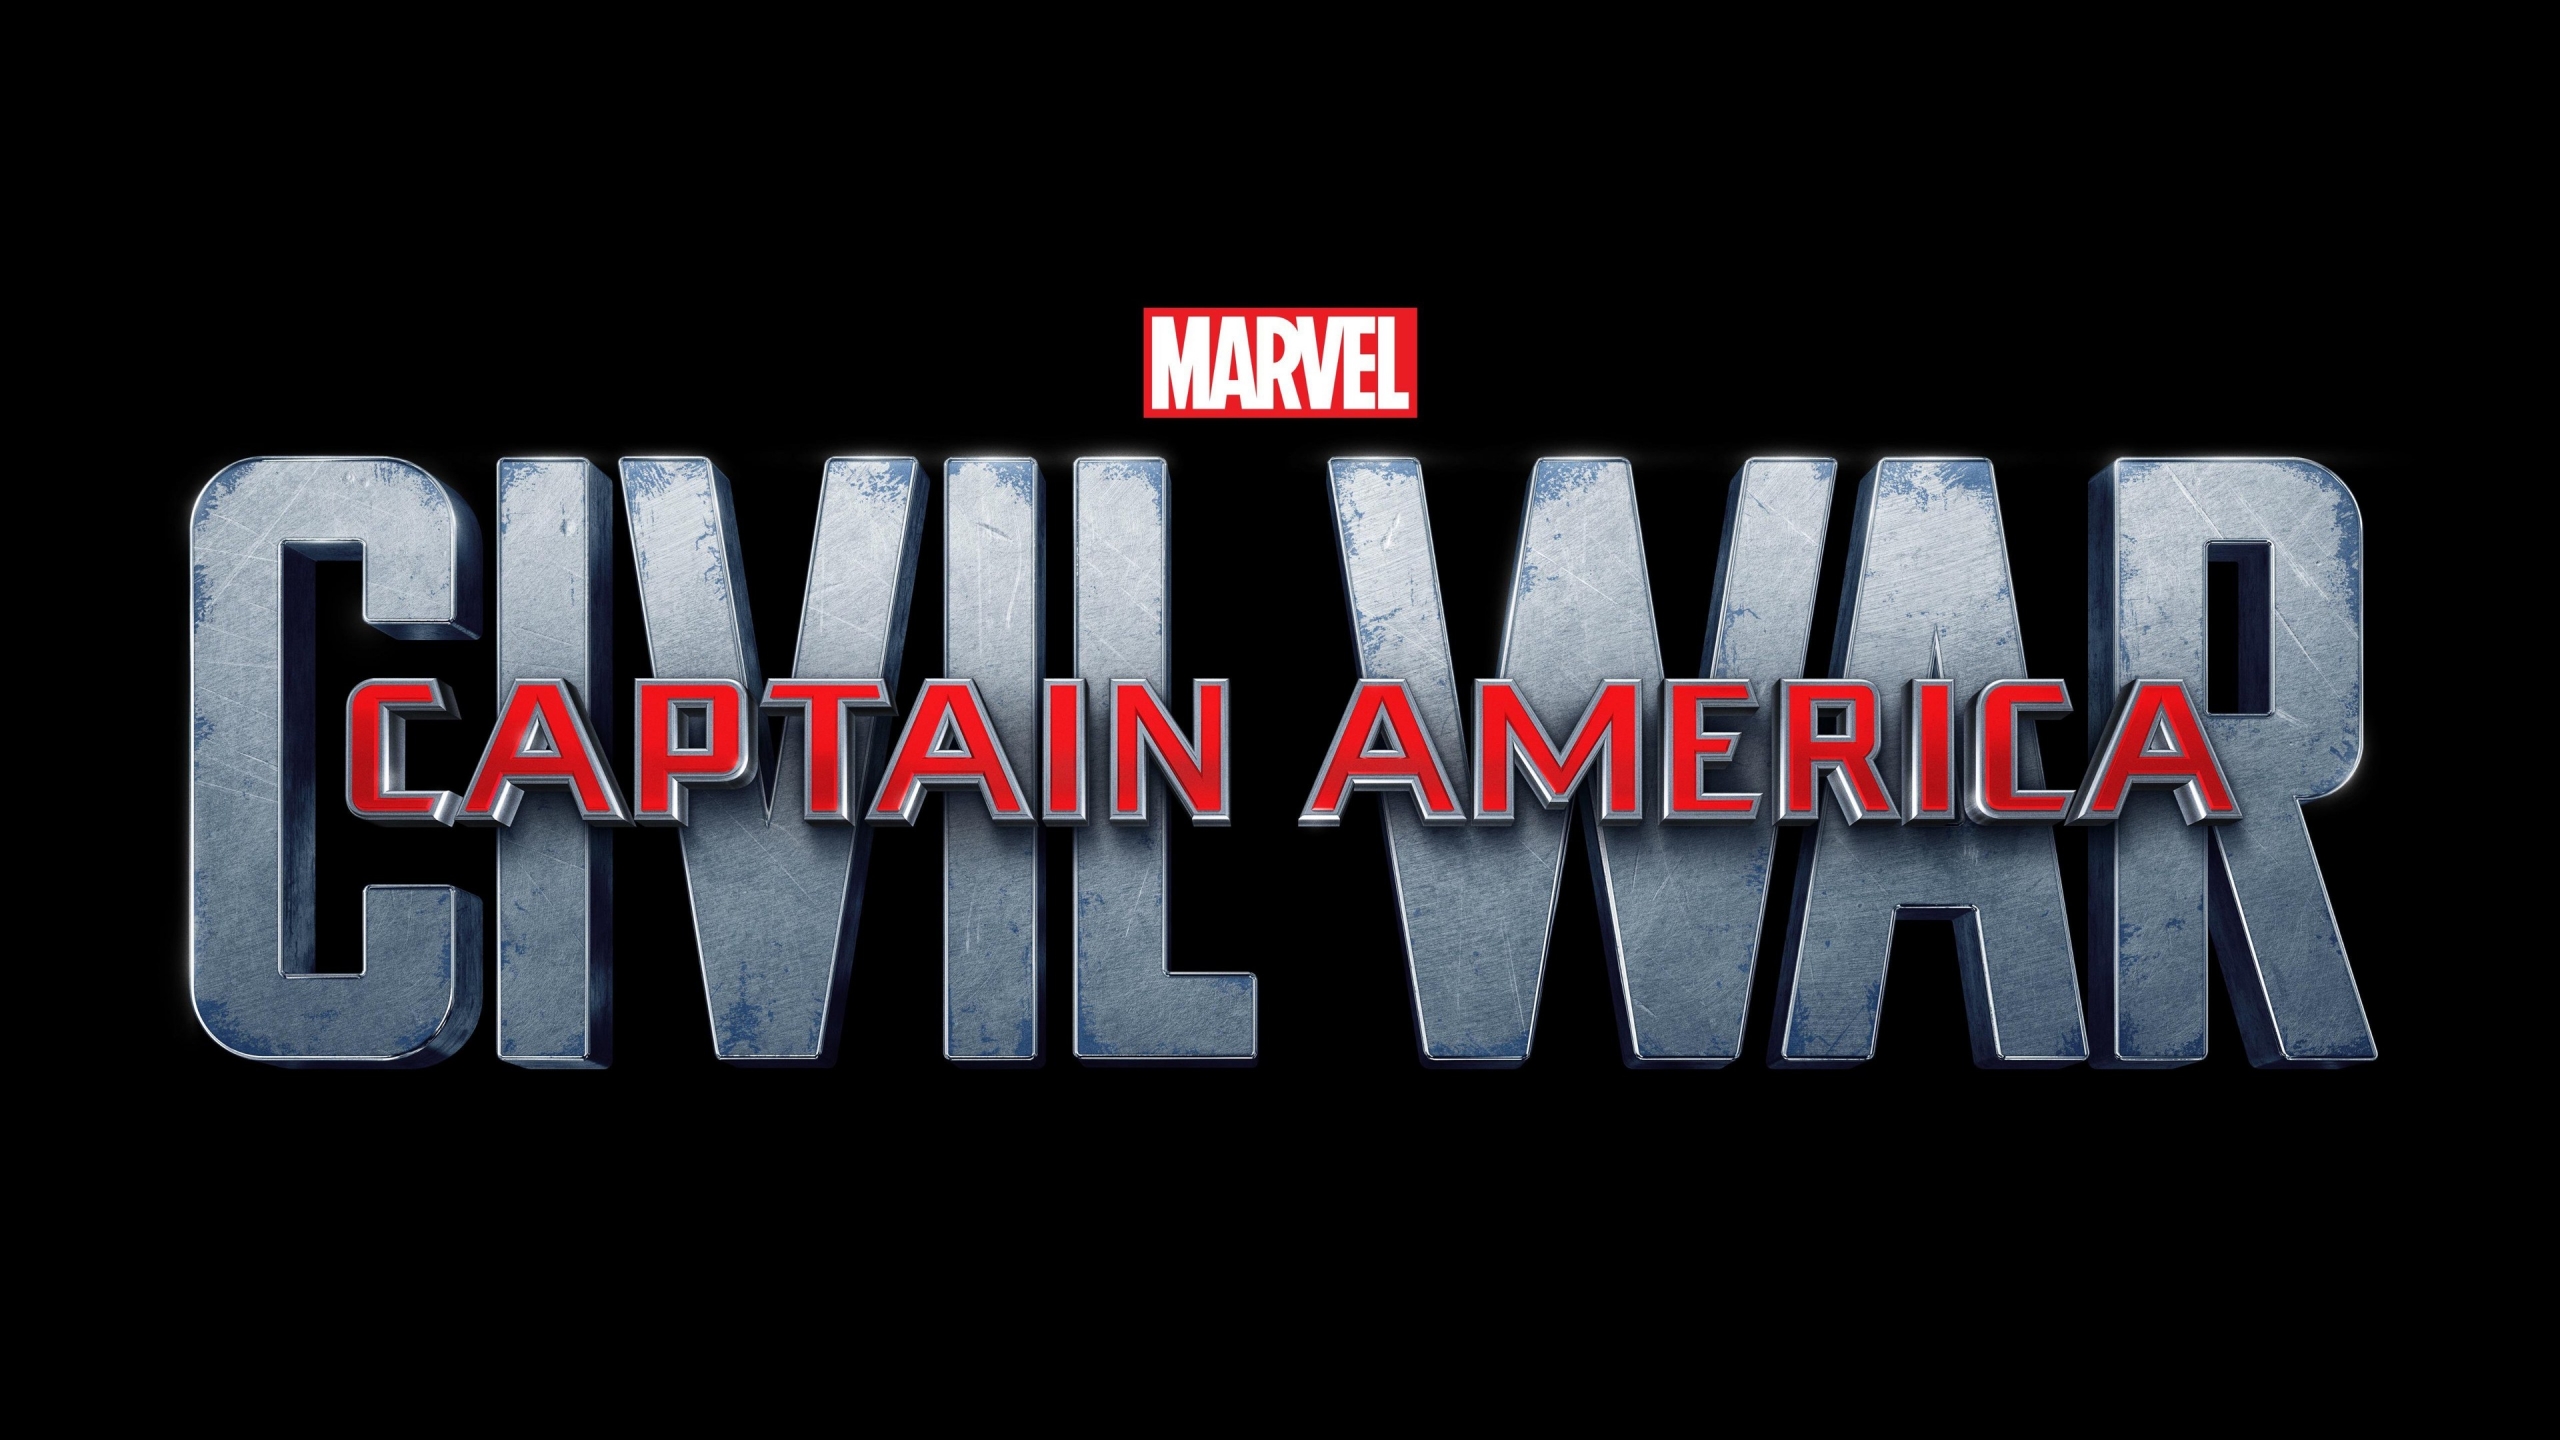 Captain America Civil War Logo for 2560x1440 HDTV resolution